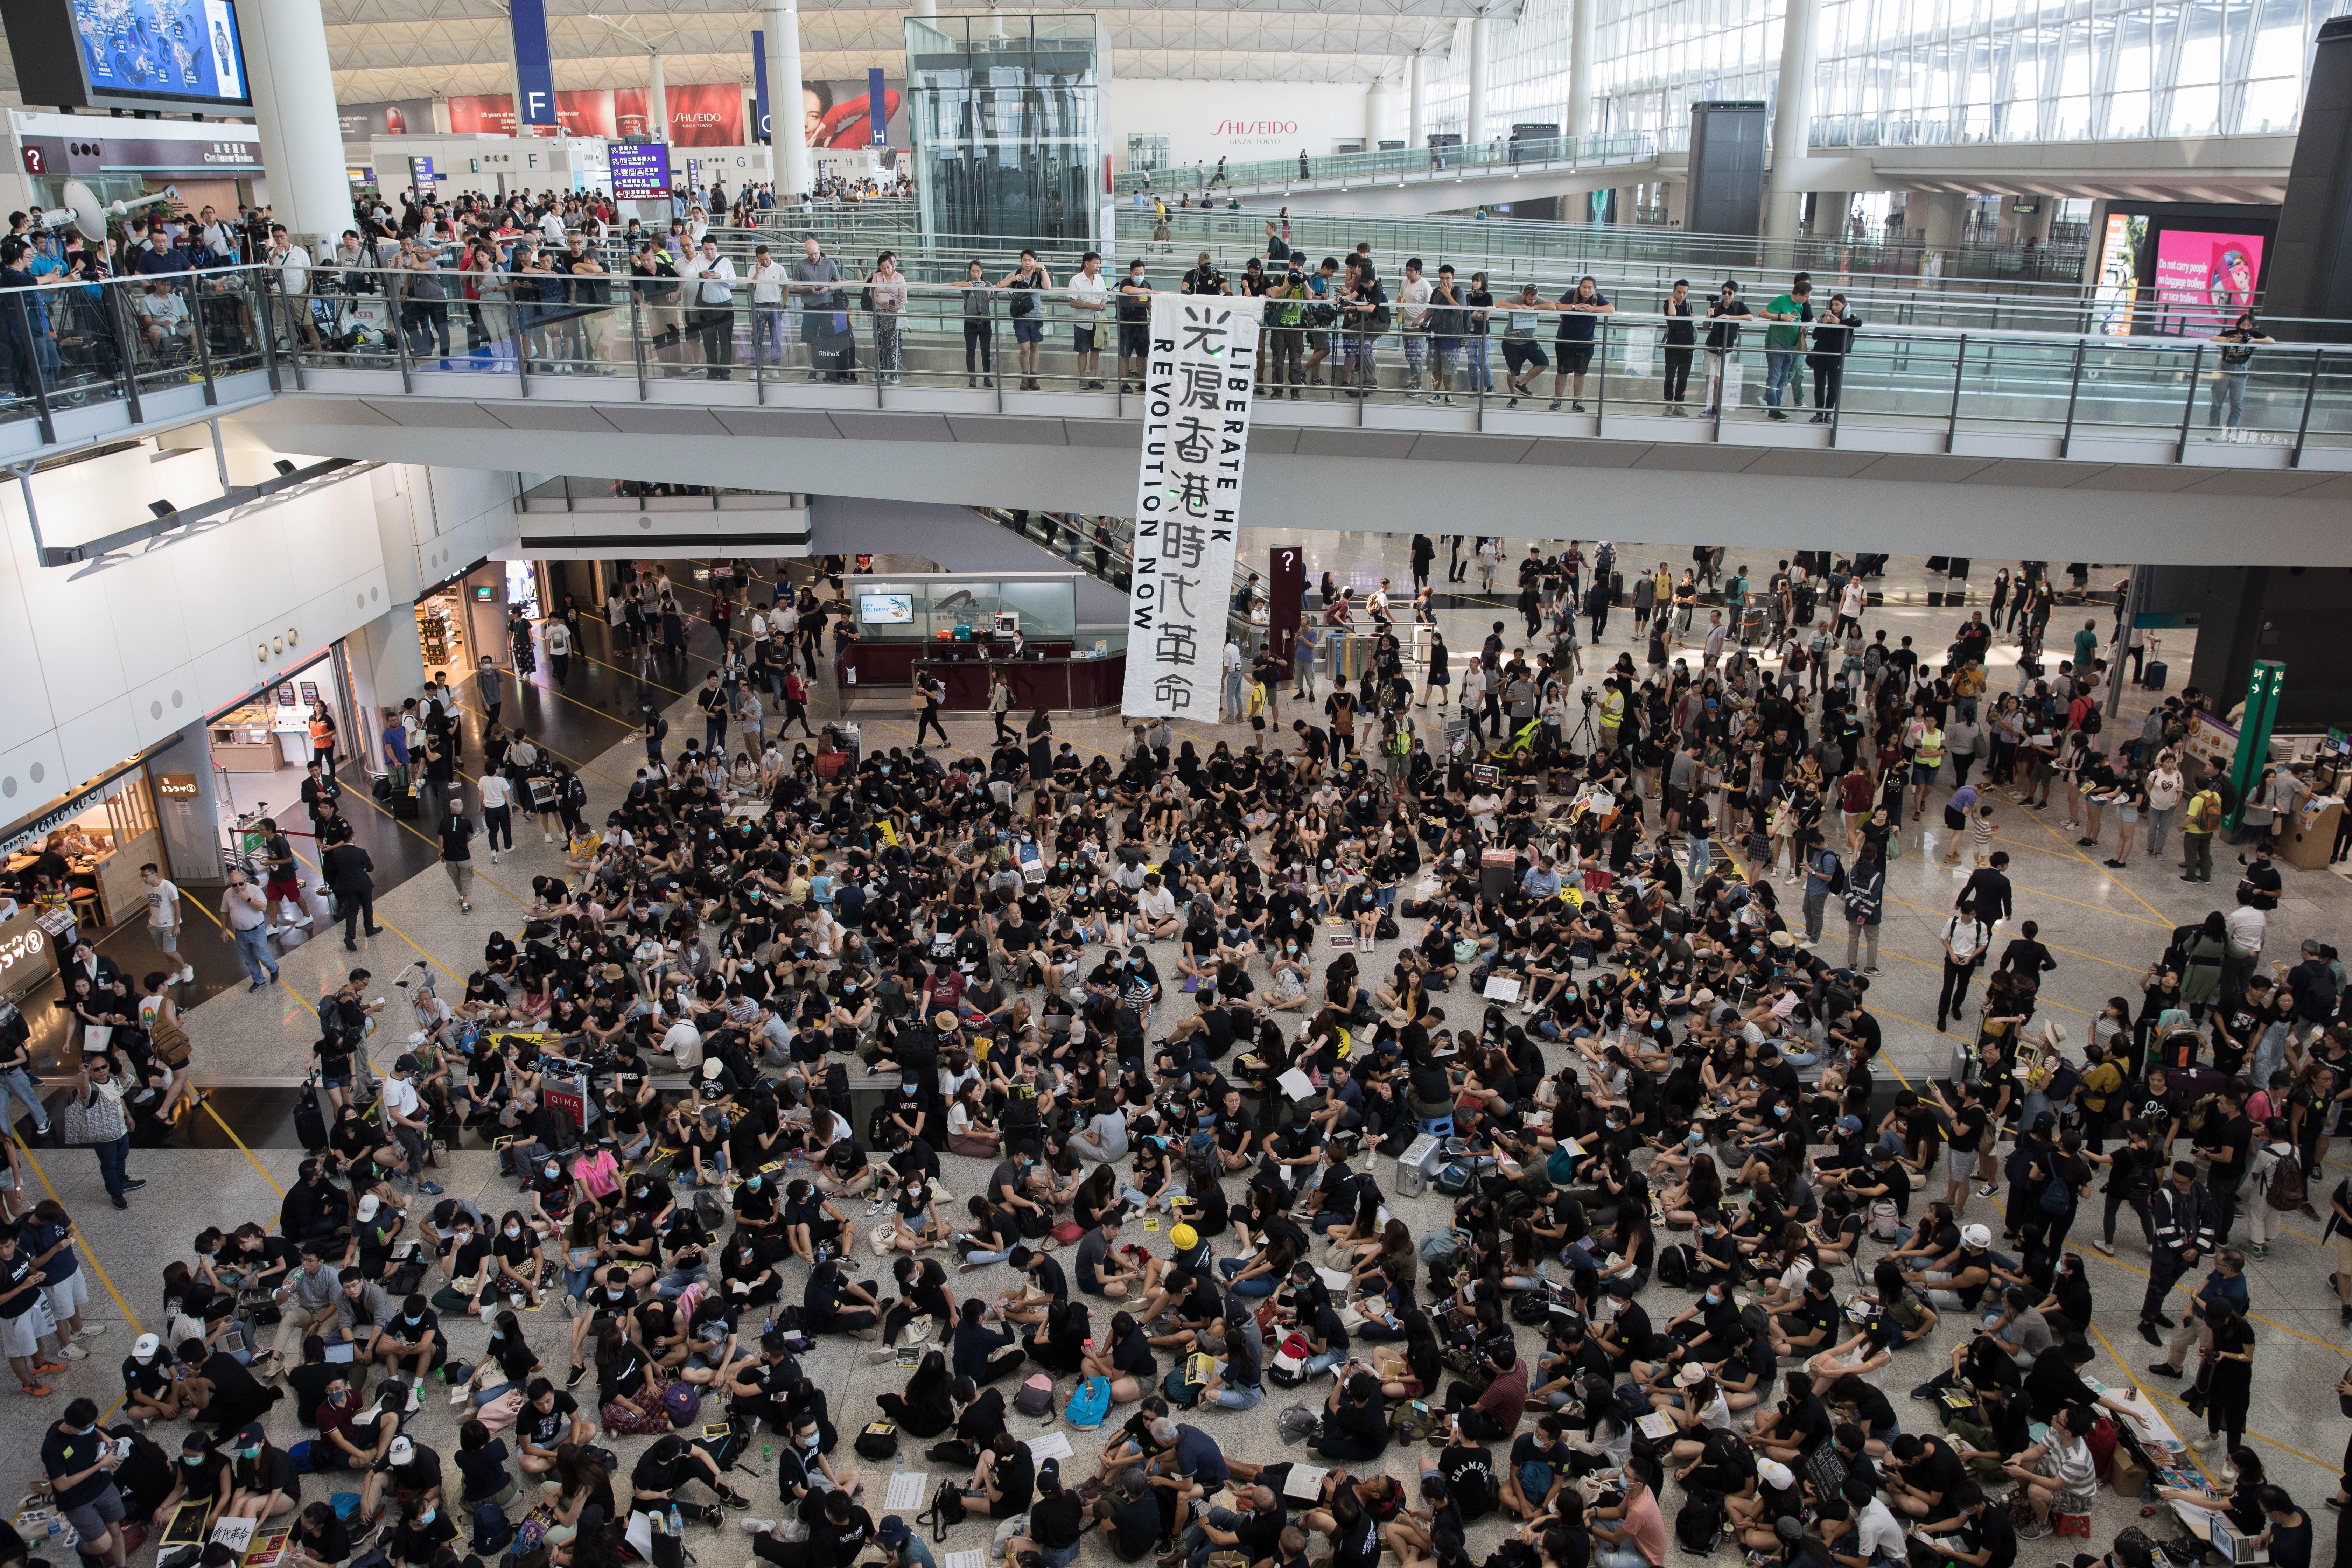 Ocupació massiva de manifestants a l'aeroport de Hong Kong